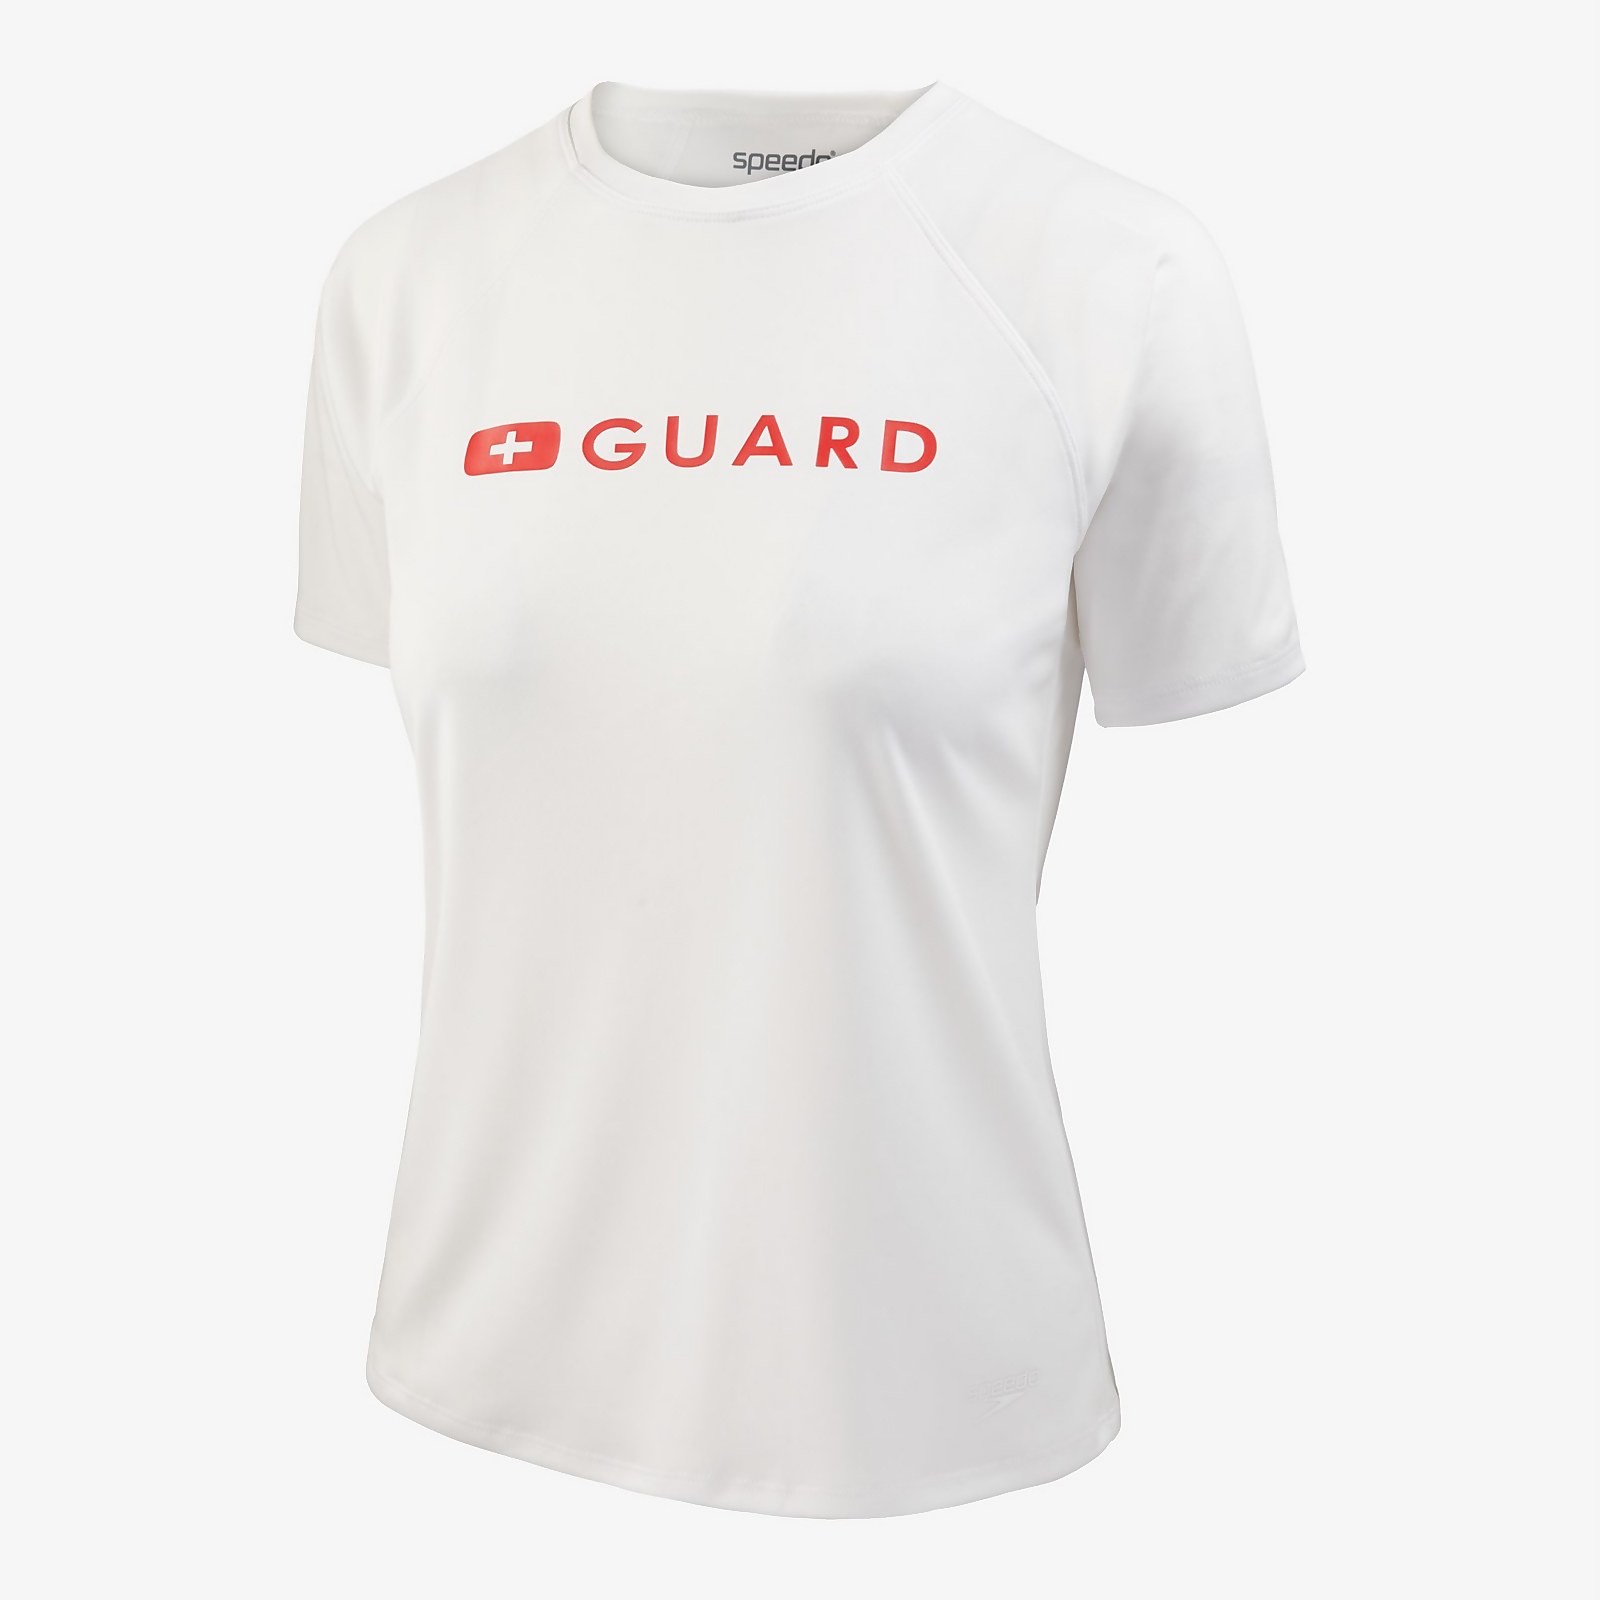 Speedo  Guard Short Sleeve Solid Swim Tee - S    : White